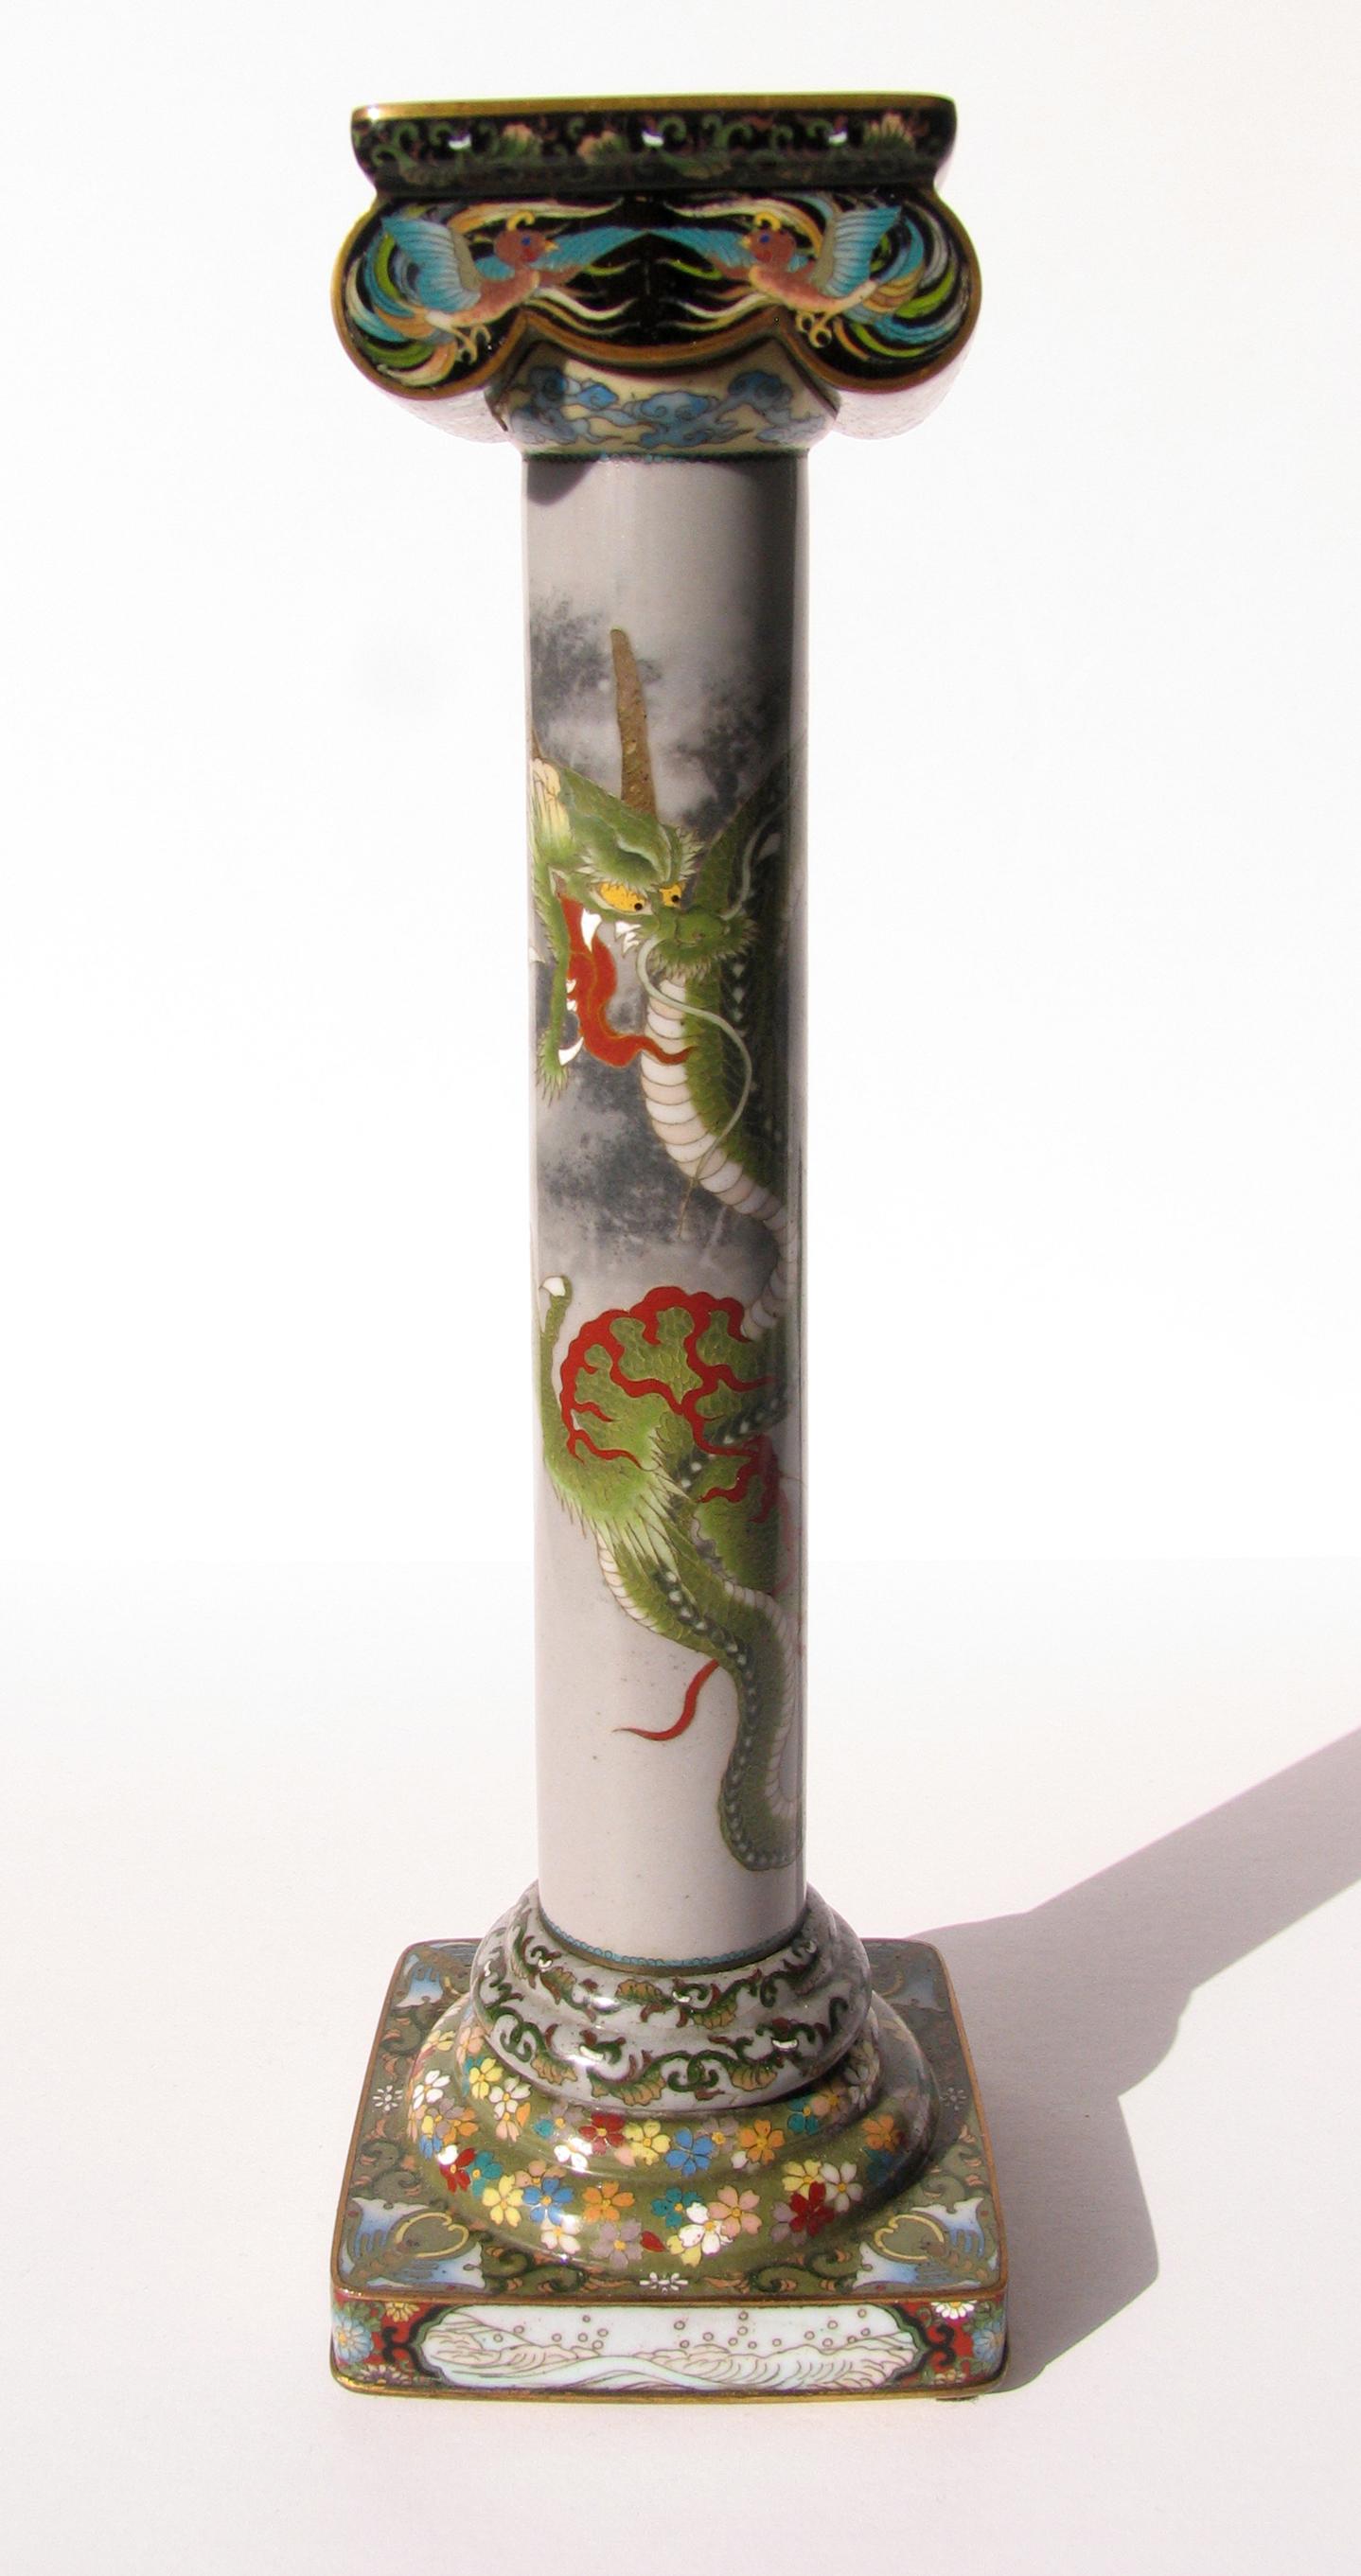 Exquisite japanische Meiji Periode Cloisonne Kerzenhalter mit einem Drachen verziert.
Fein detaillierte Metall- und Emaillearbeiten. In ausgezeichnetem, altersgemäßem Zustand.